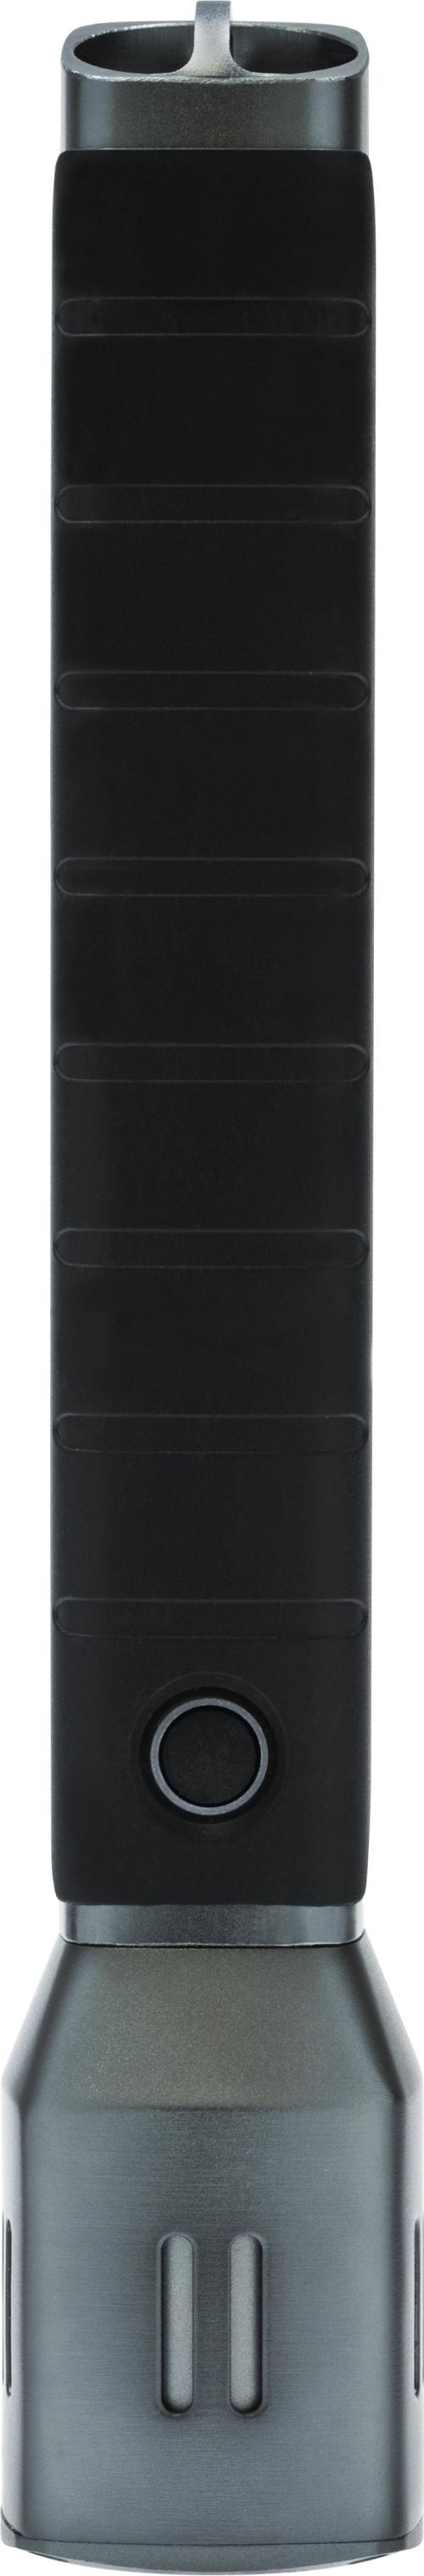 Ficklampa TL-525, 25,5 cm